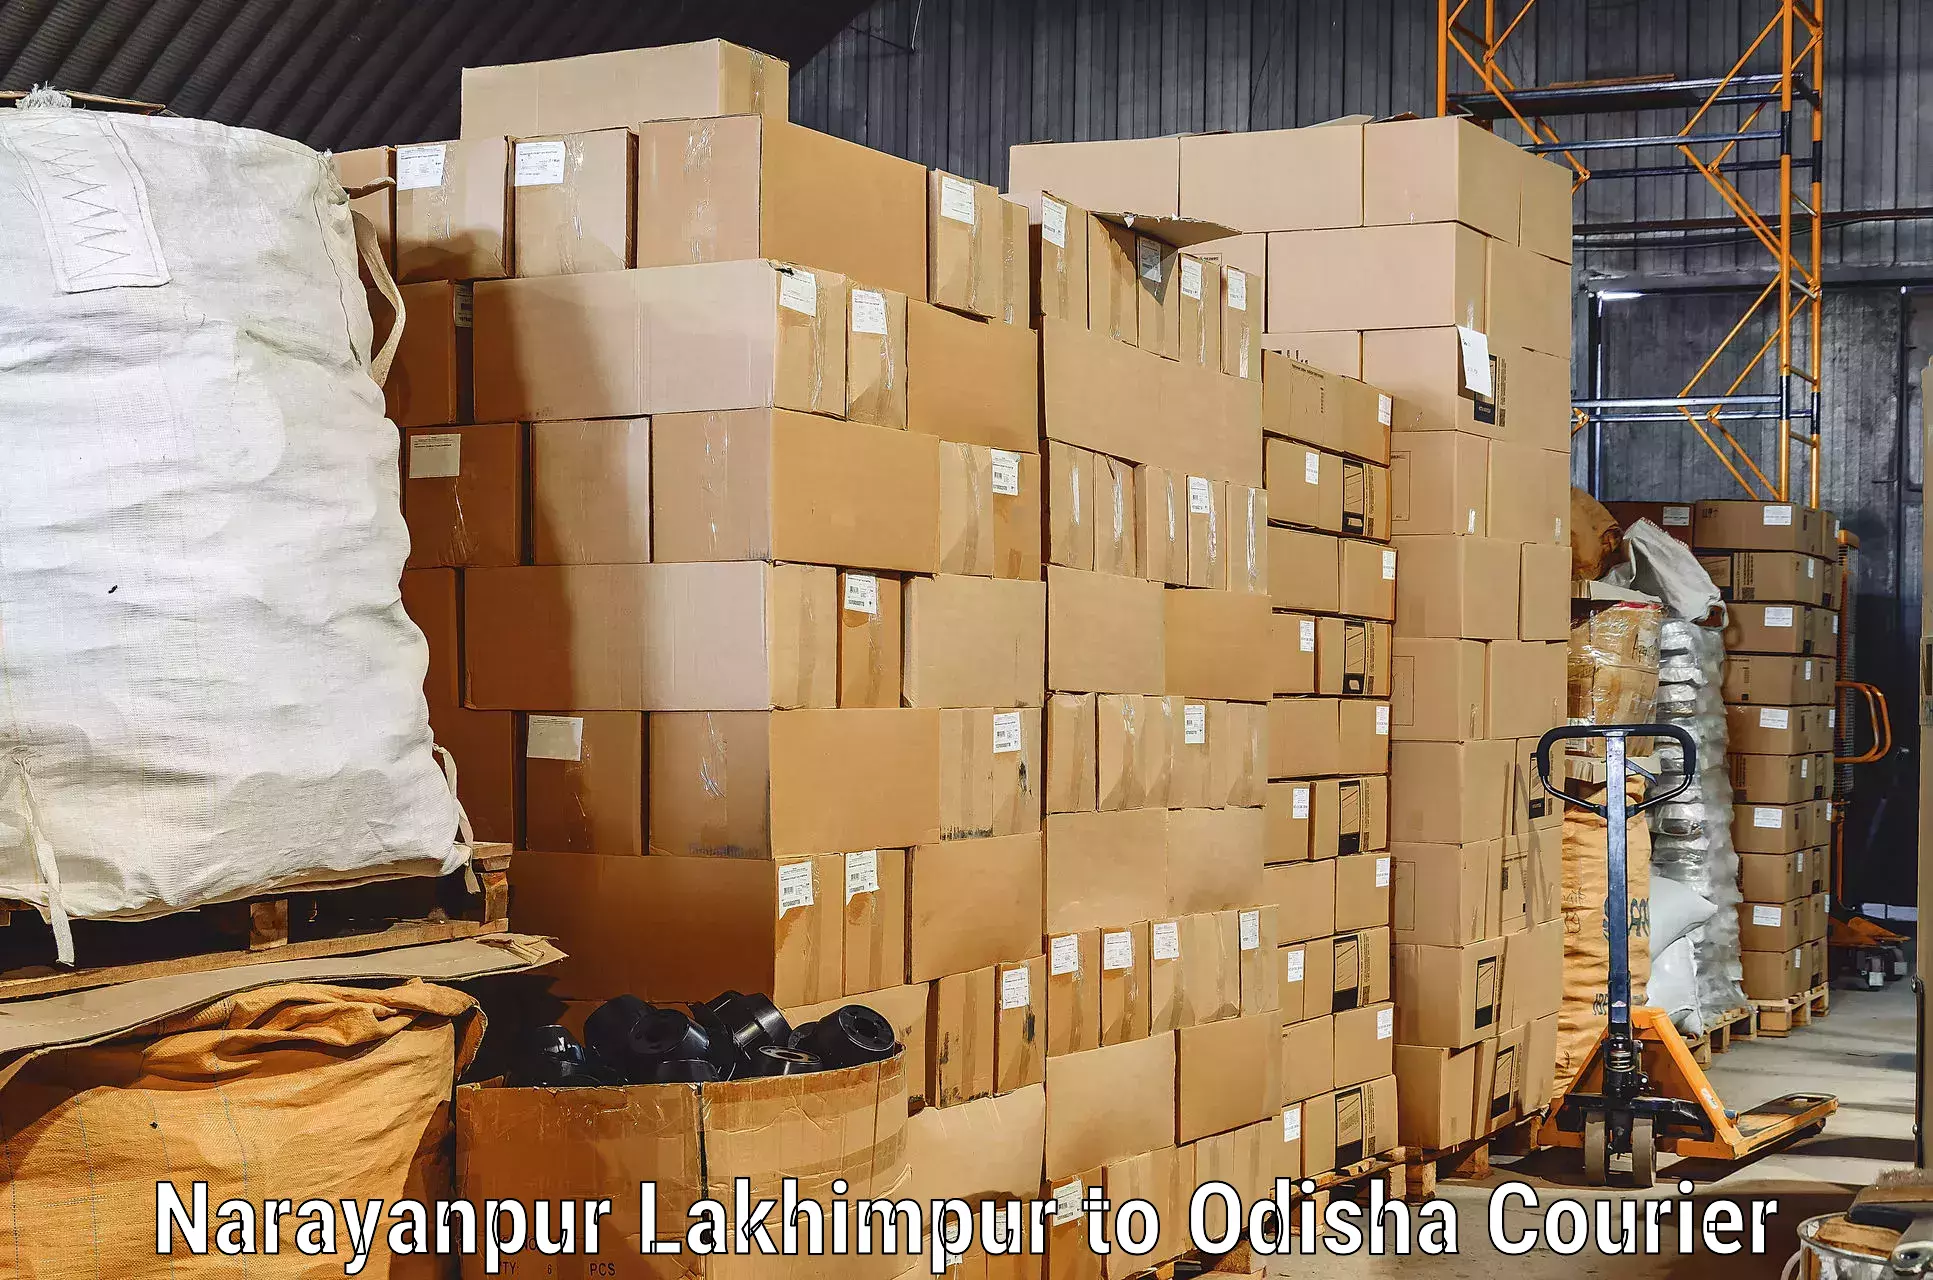 Reliable movers Narayanpur Lakhimpur to Gumadera